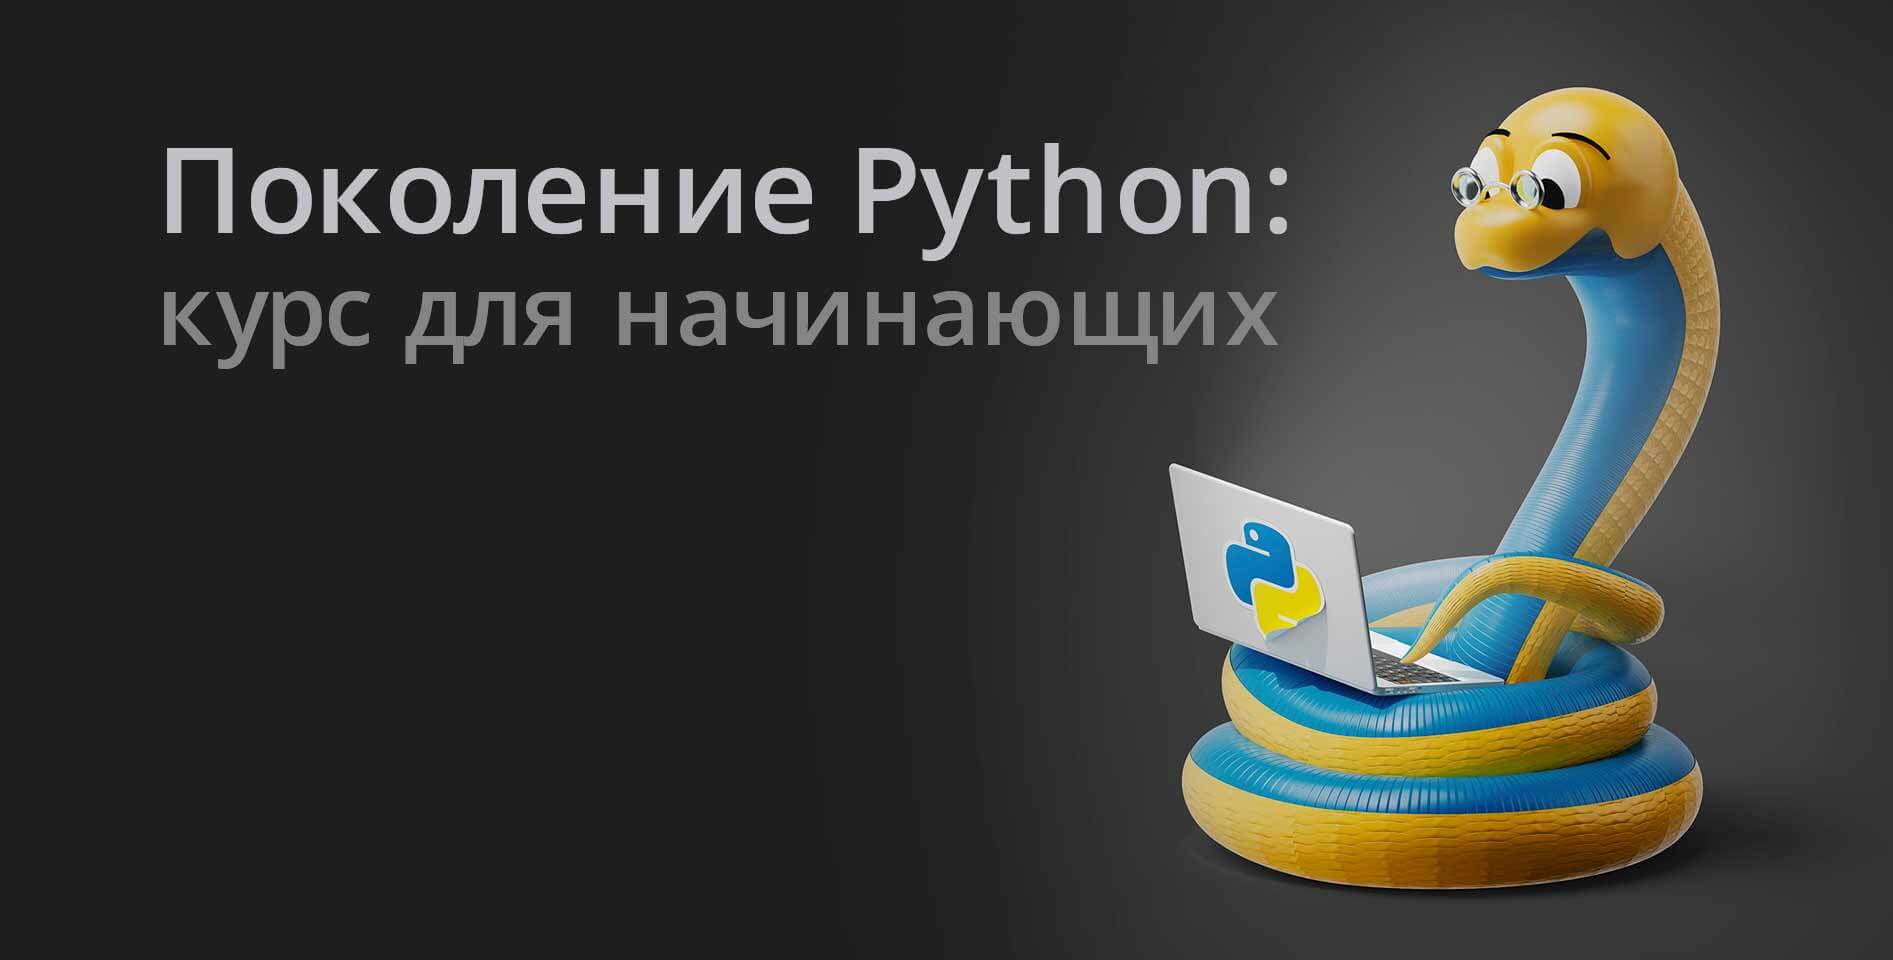 Stepik — Поколение Python: курс для начинающих